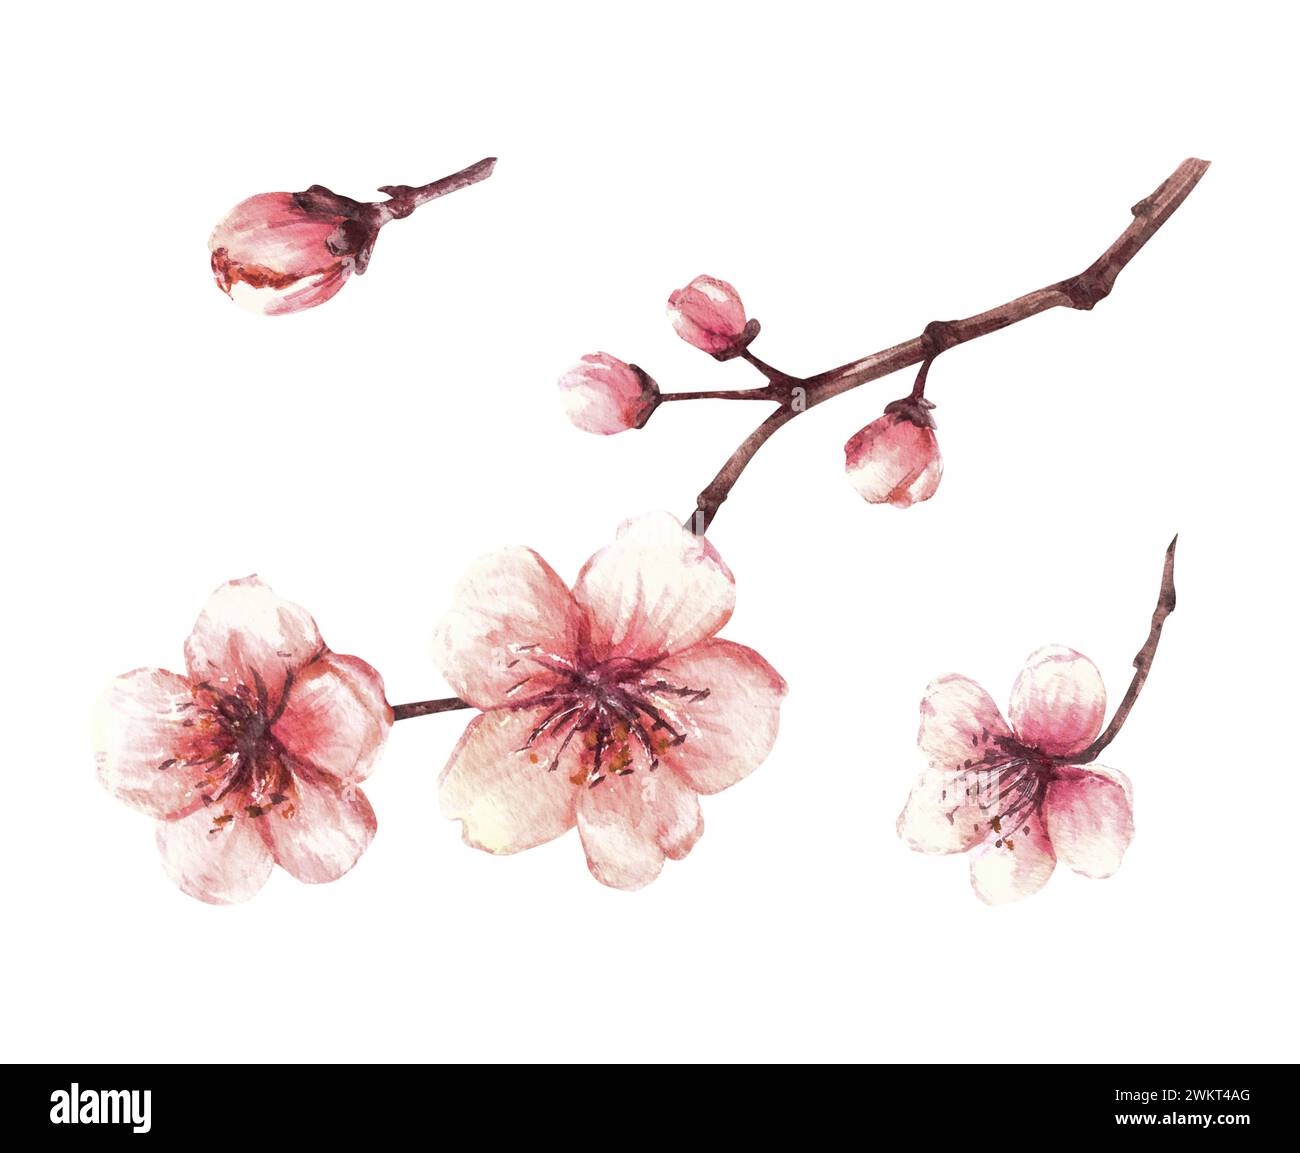 Frühlingsblüten von Bäumen gesetzt. Sakura Zweige, Kirsche, Apfelbäume in Blüte, Blumen und Knospen Aquarell handgezeichnete Illustration für Gruß, Unkraut Stockfoto